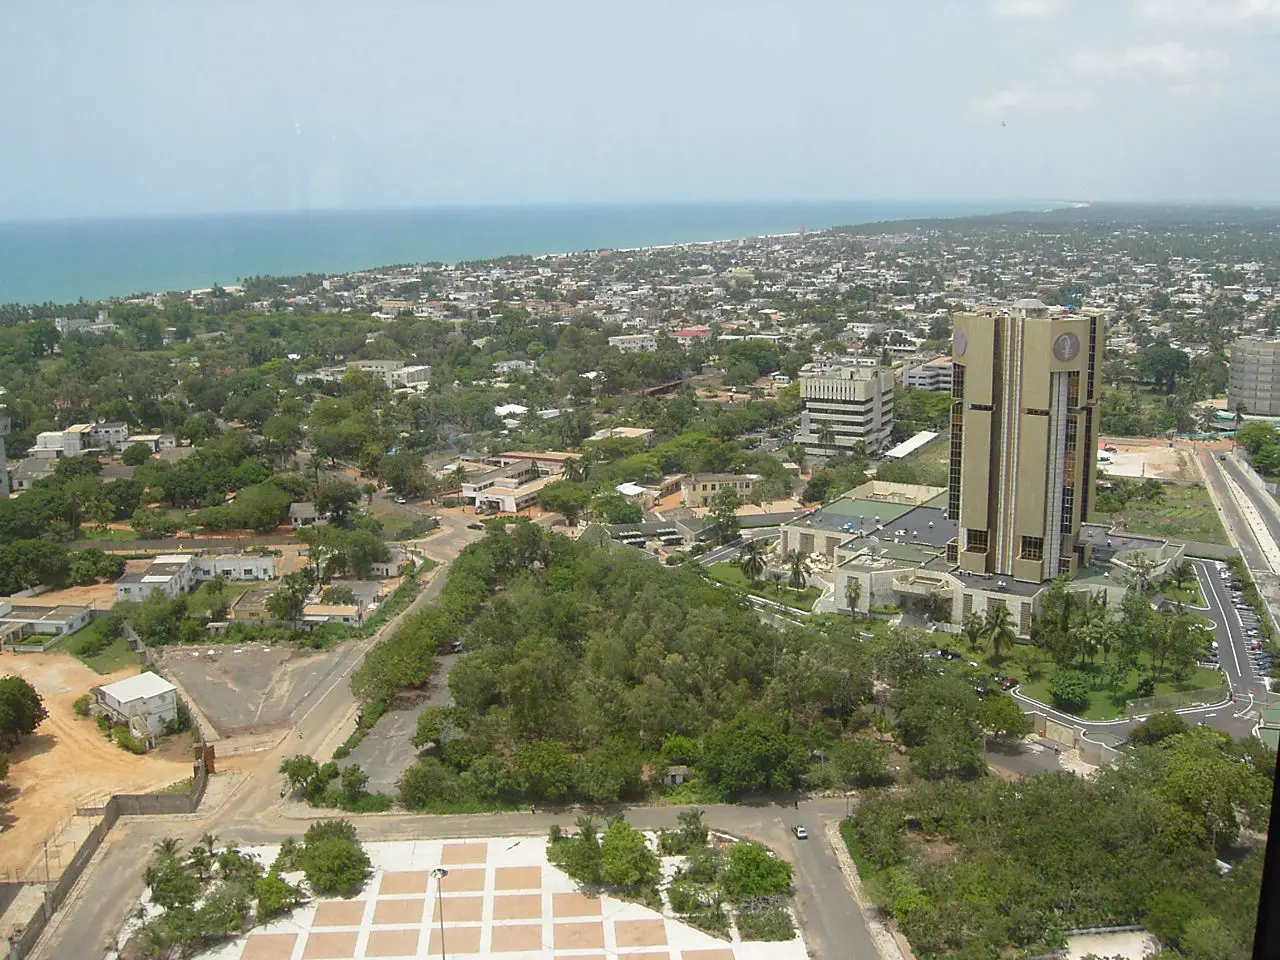 La ville de Lomé. Image d'illustration © Droits réservés